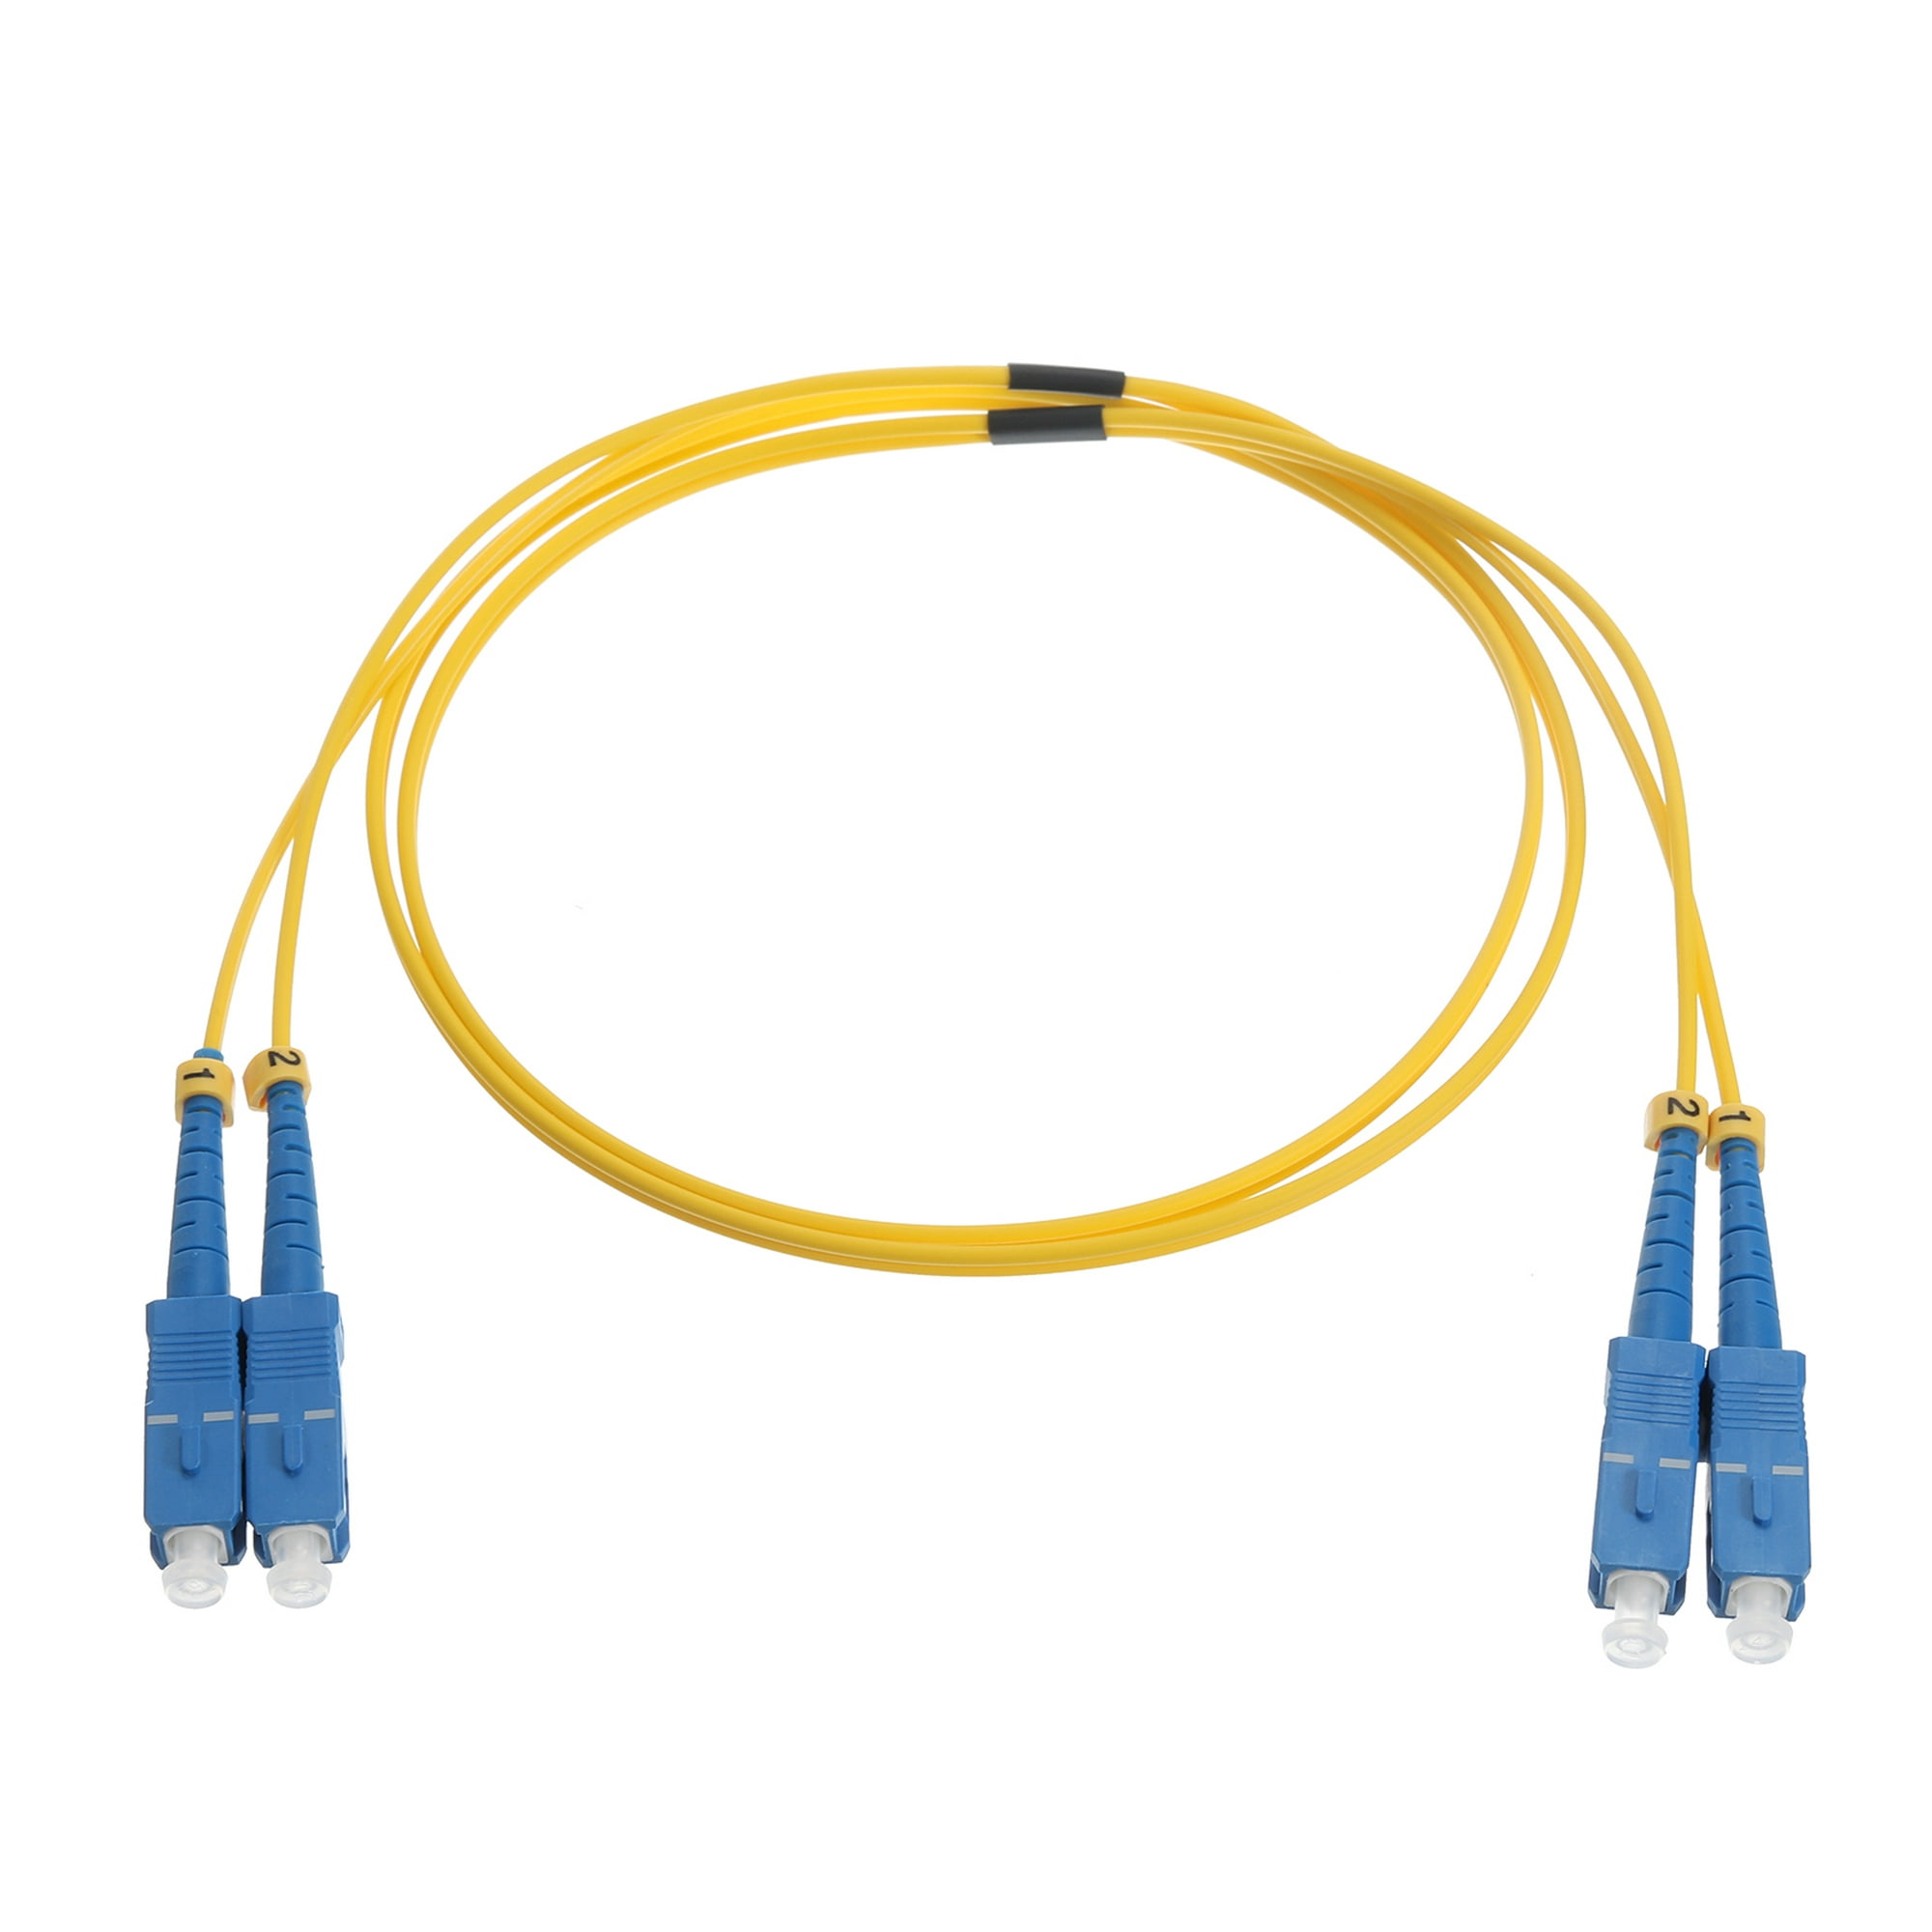 1uds 6.6ft Monomodo Dúplex Fibra Óptica Cable LSZH Cable Salto Fibra Óptica  S-c a S-c para Centros Datos Router Switches Transceptores Unique Bargains  cables de audio de fibra optica